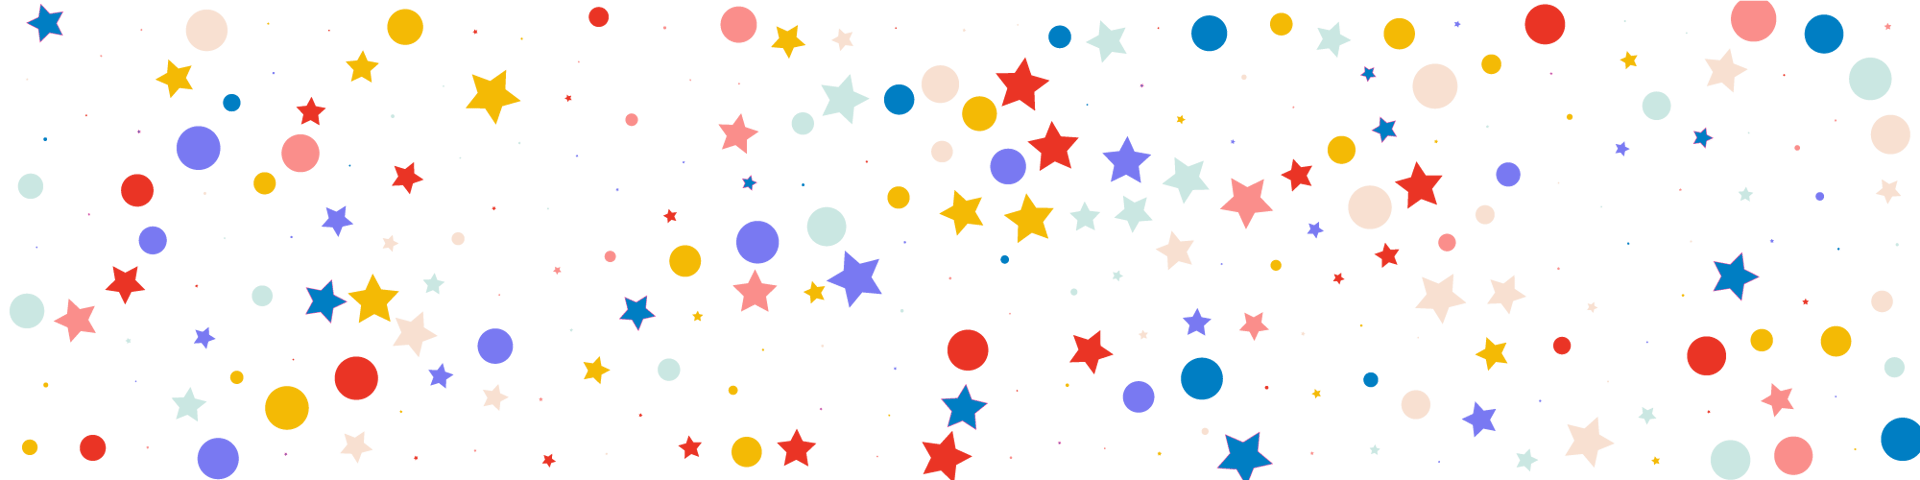 Stars and circles